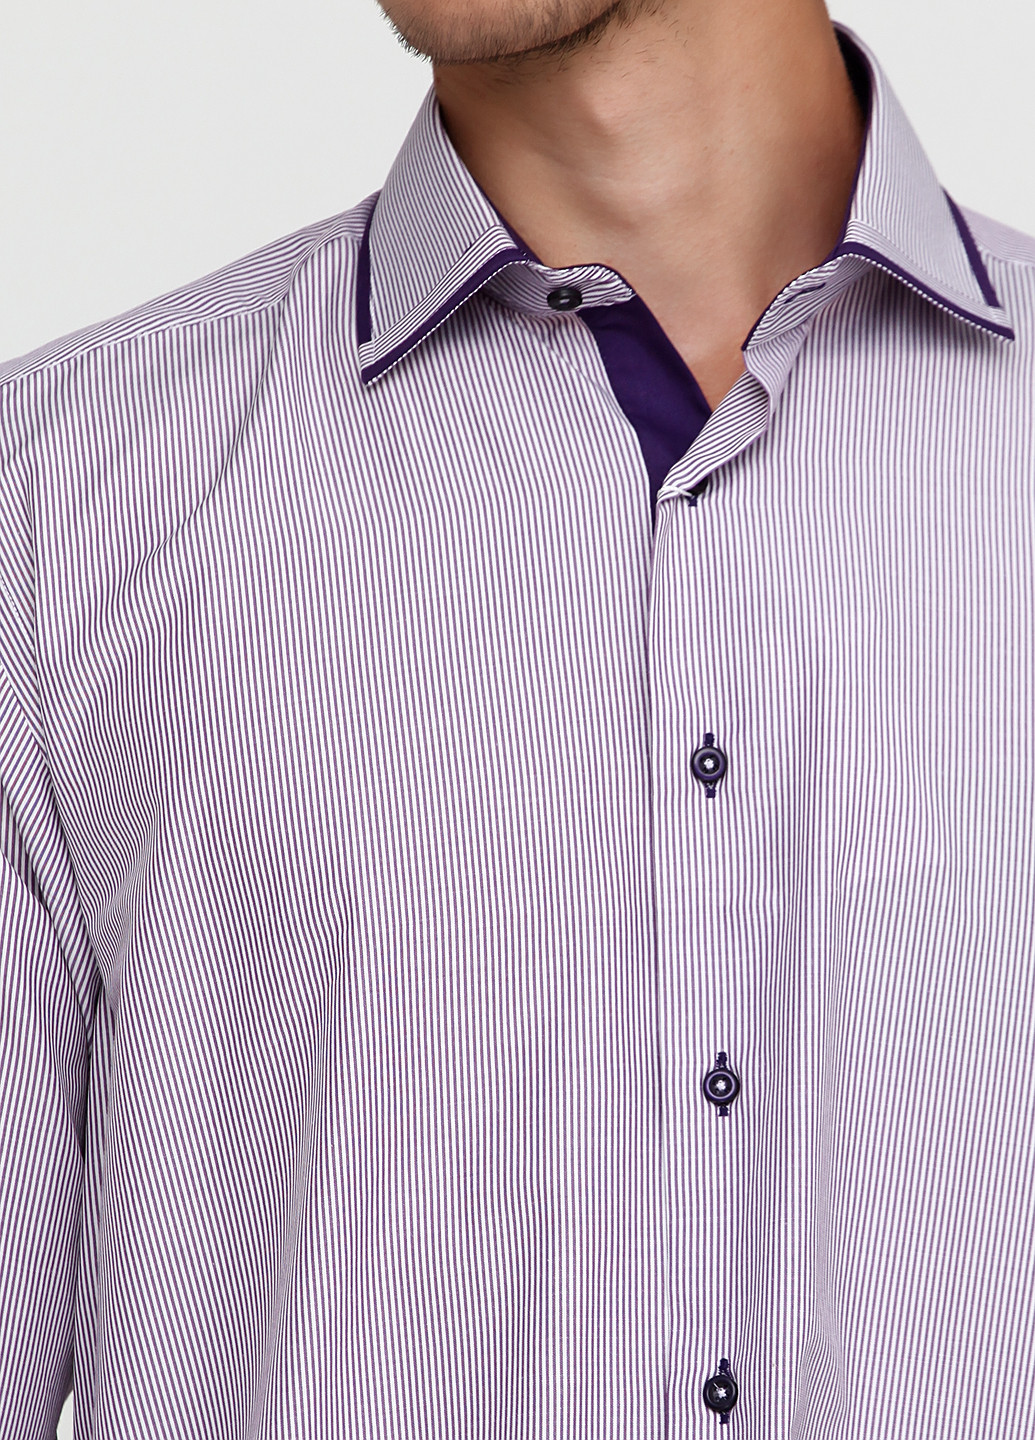 Бледно-фиолетовая кэжуал рубашка в полоску Twors